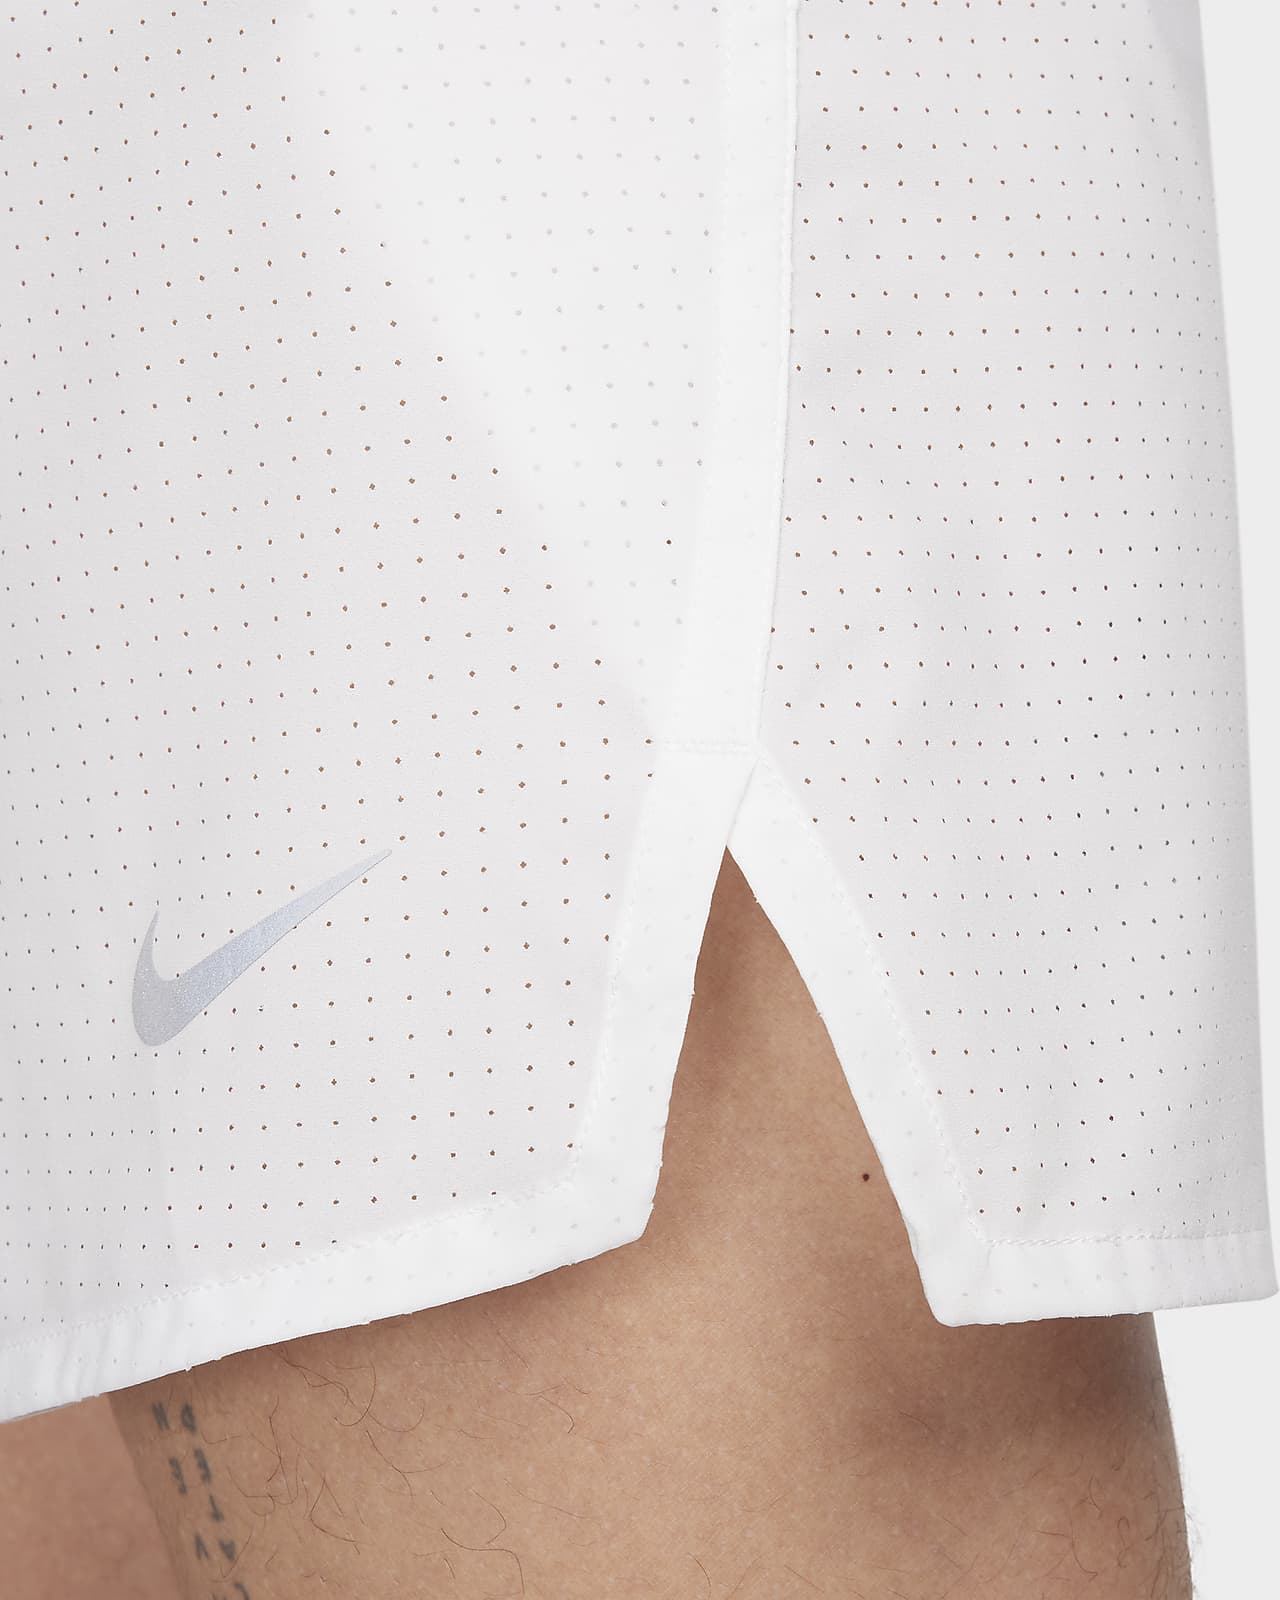 Shorts de running con ropa interior integrada de 8 cm de tiro alto para  mujer Nike Dri-FIT